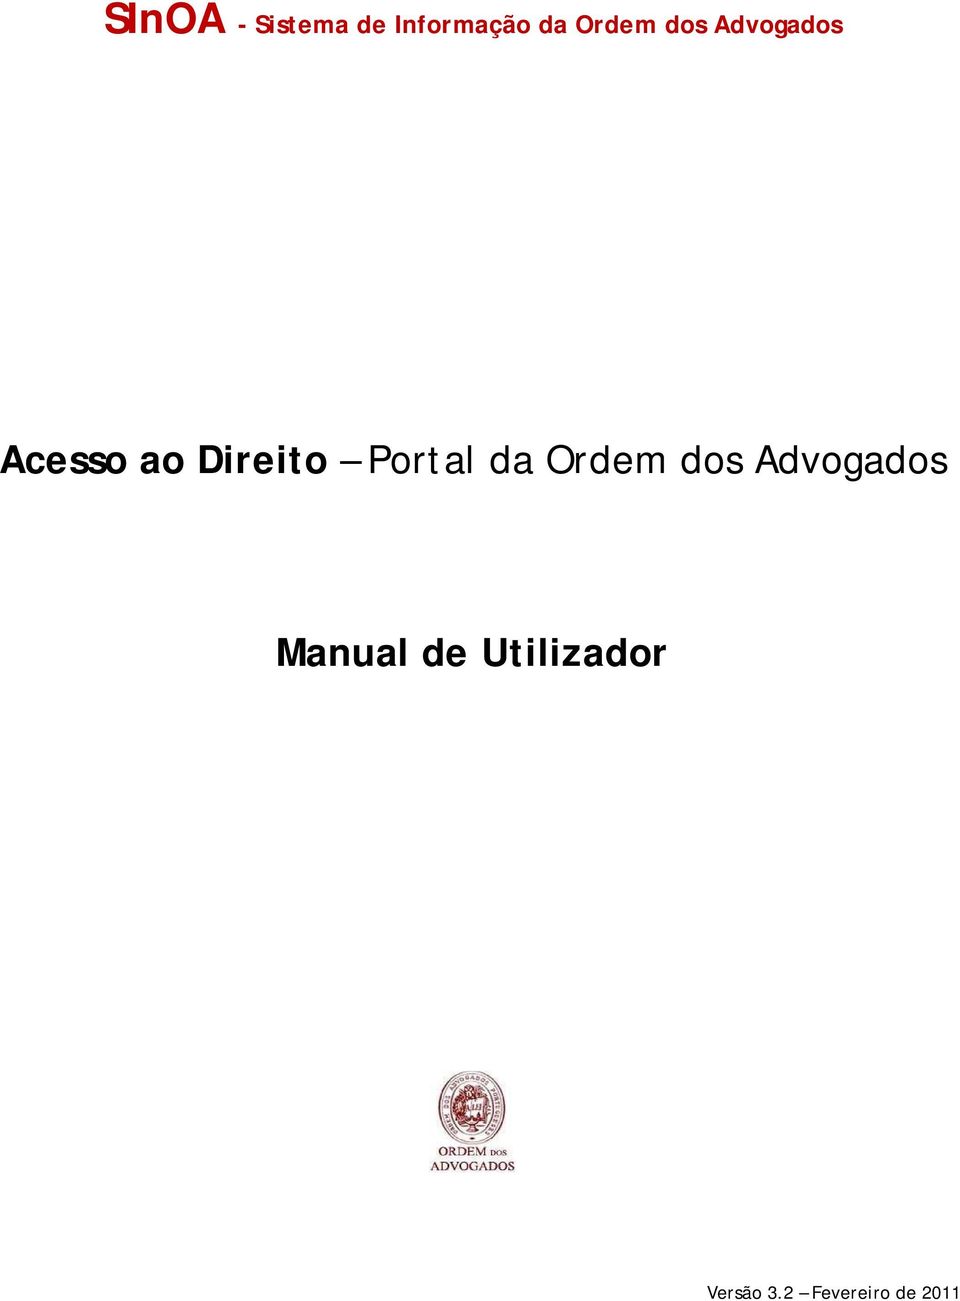 Portal da Ordem dos Advogados Manual